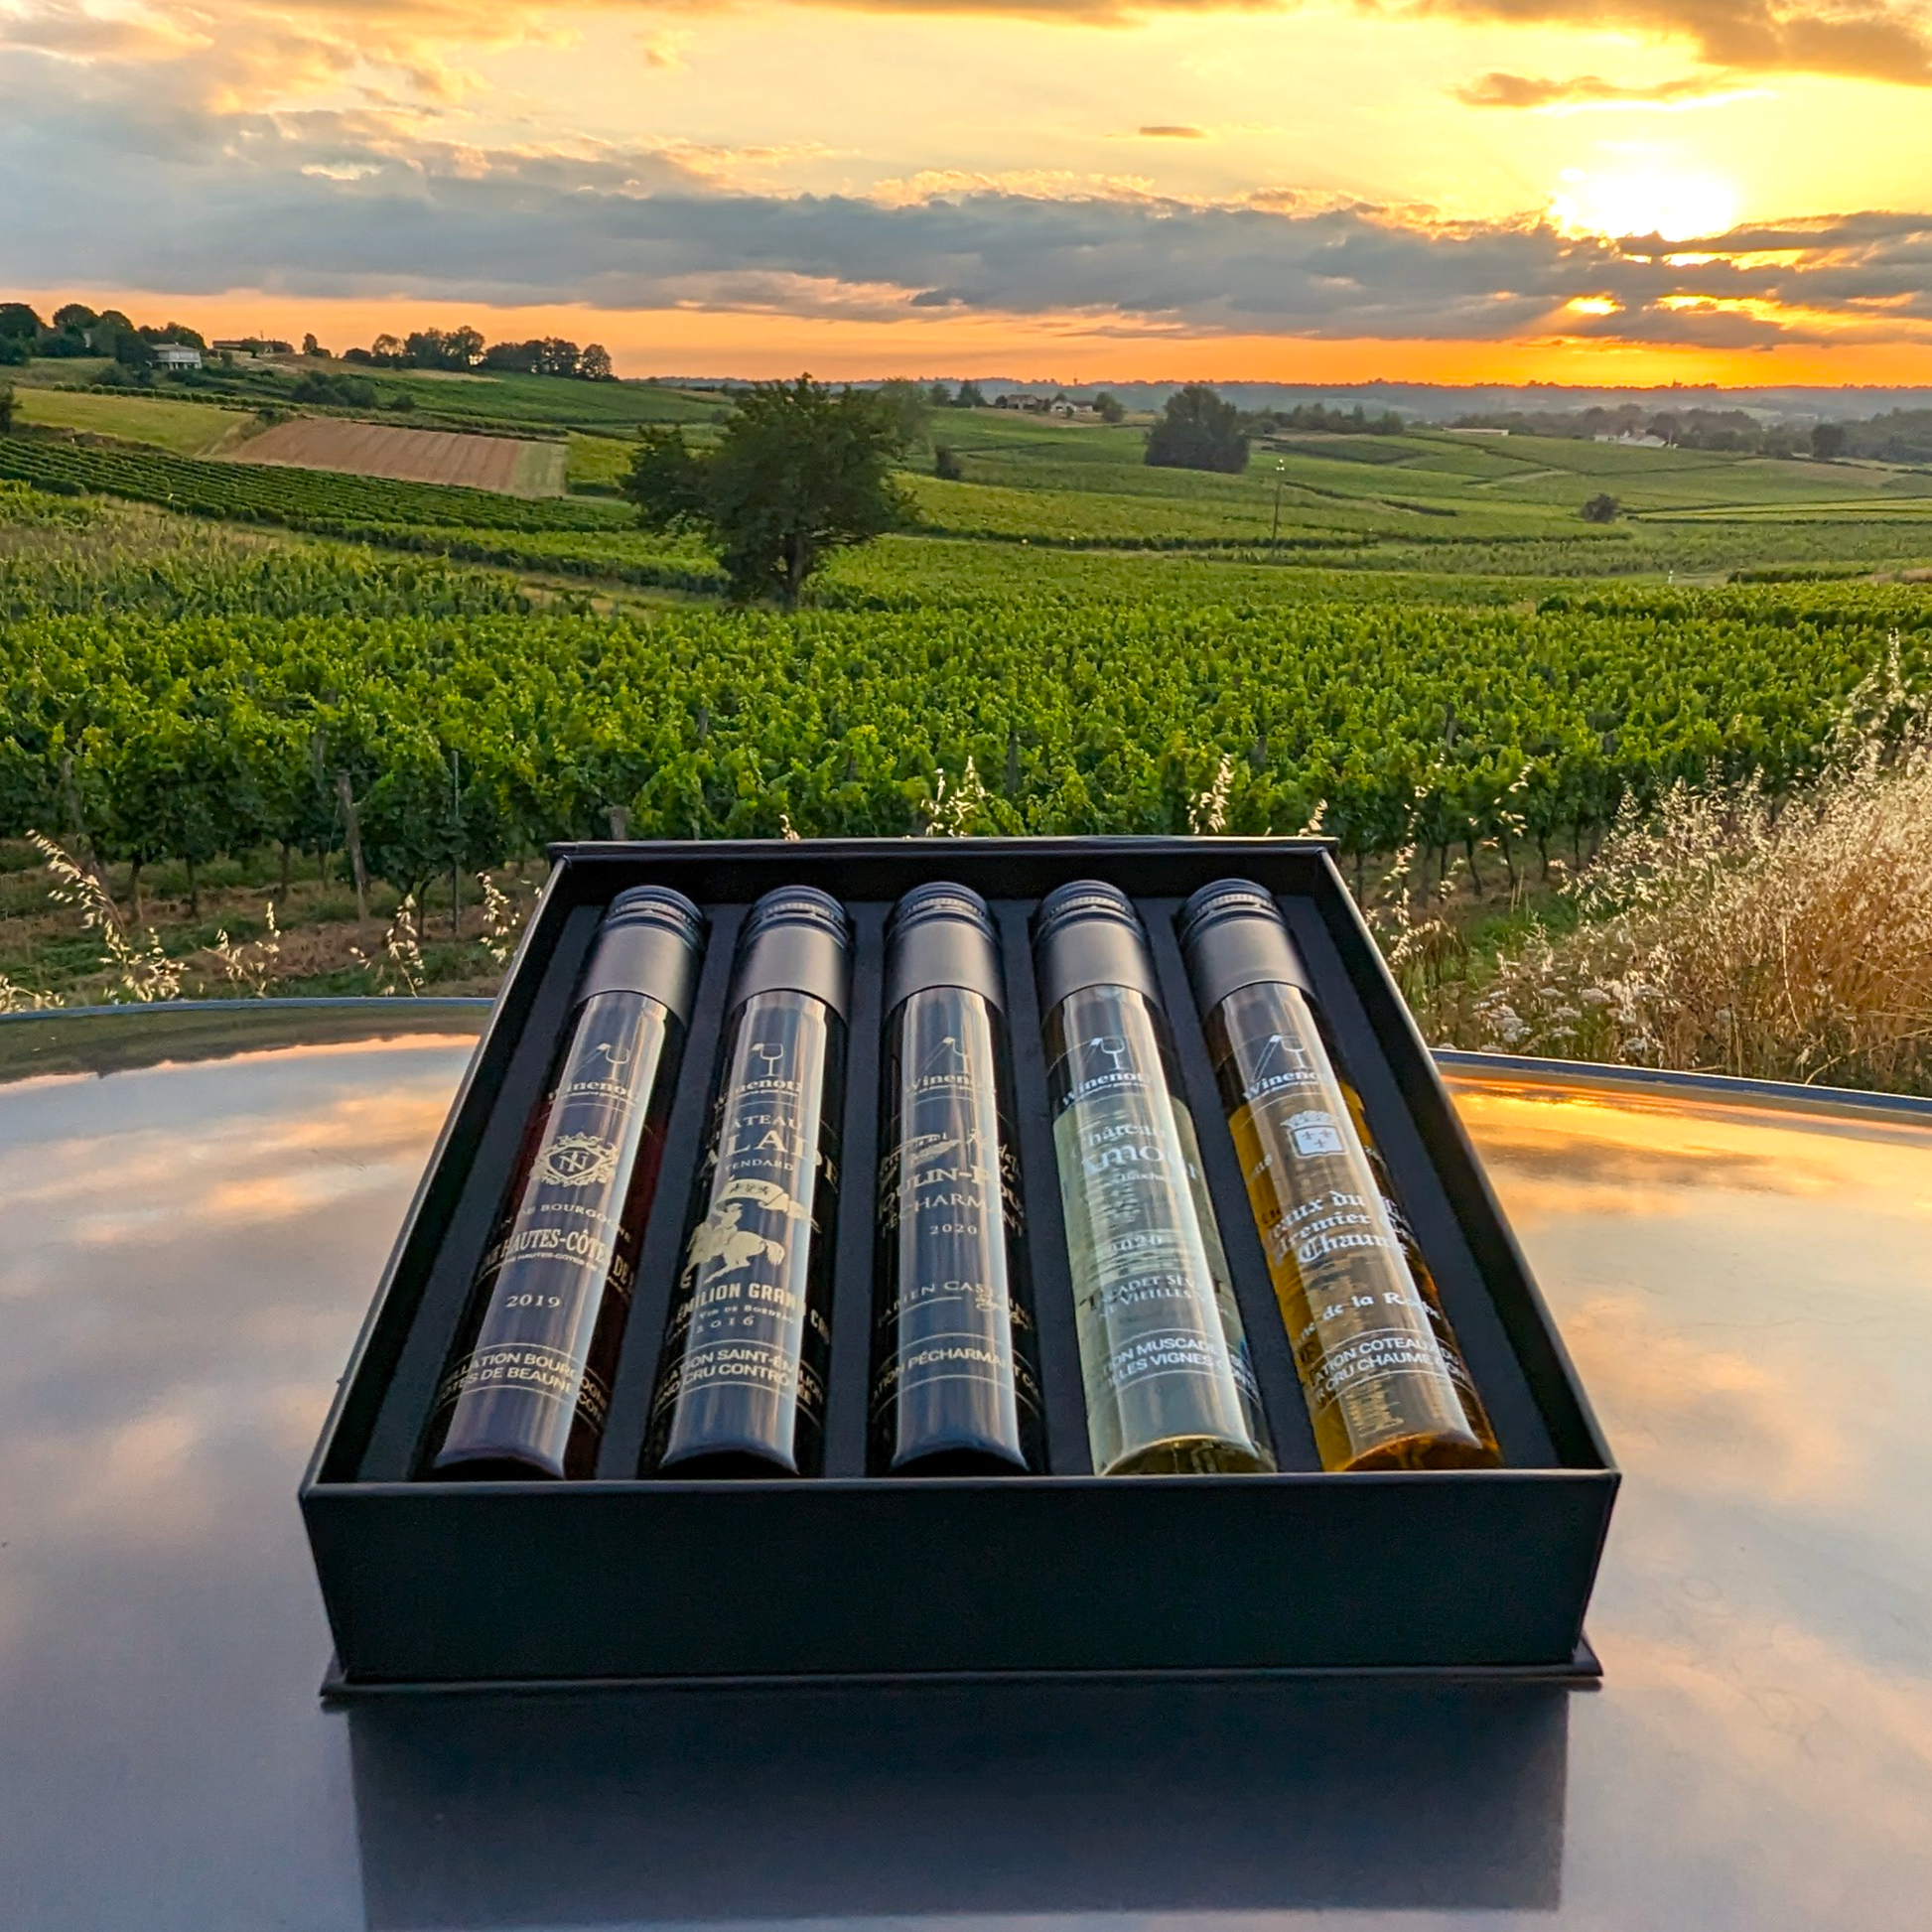 winenot? - 5 wine gift box set with sunset